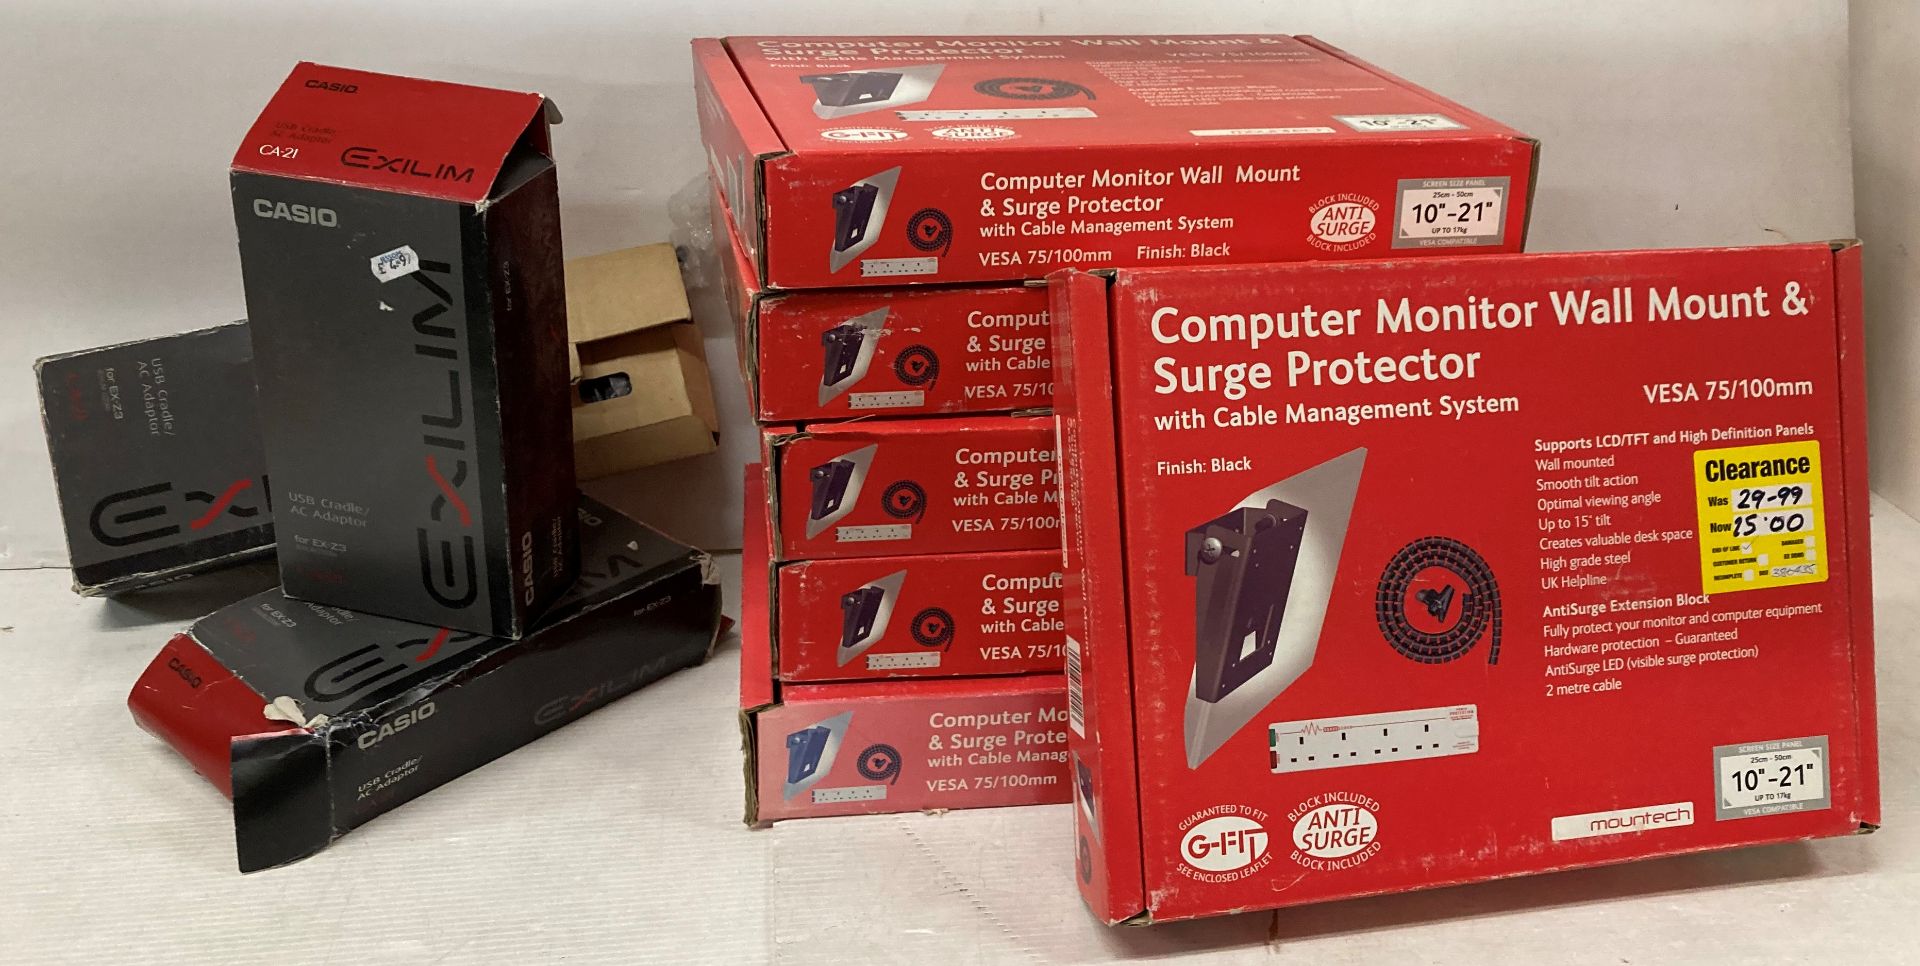 6 x computer monitor wall mount & surge protectors and 3 x Casio USB Cradles/AC Adaptors (saleroom